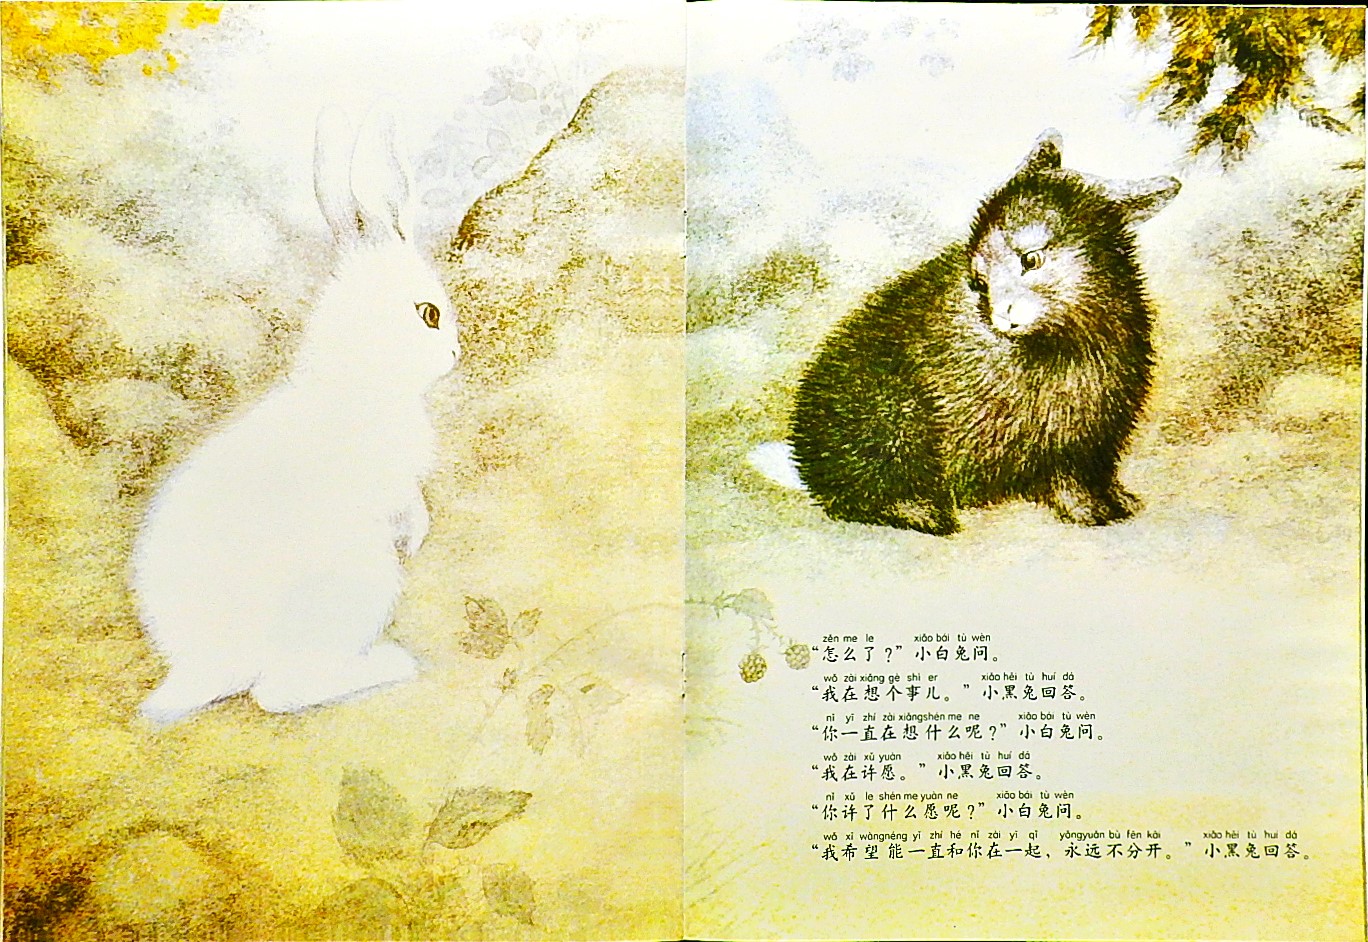 黑兔和白兔 (10),绘本,绘本故事,绘本阅读,故事书,童书,图画书,课外阅读